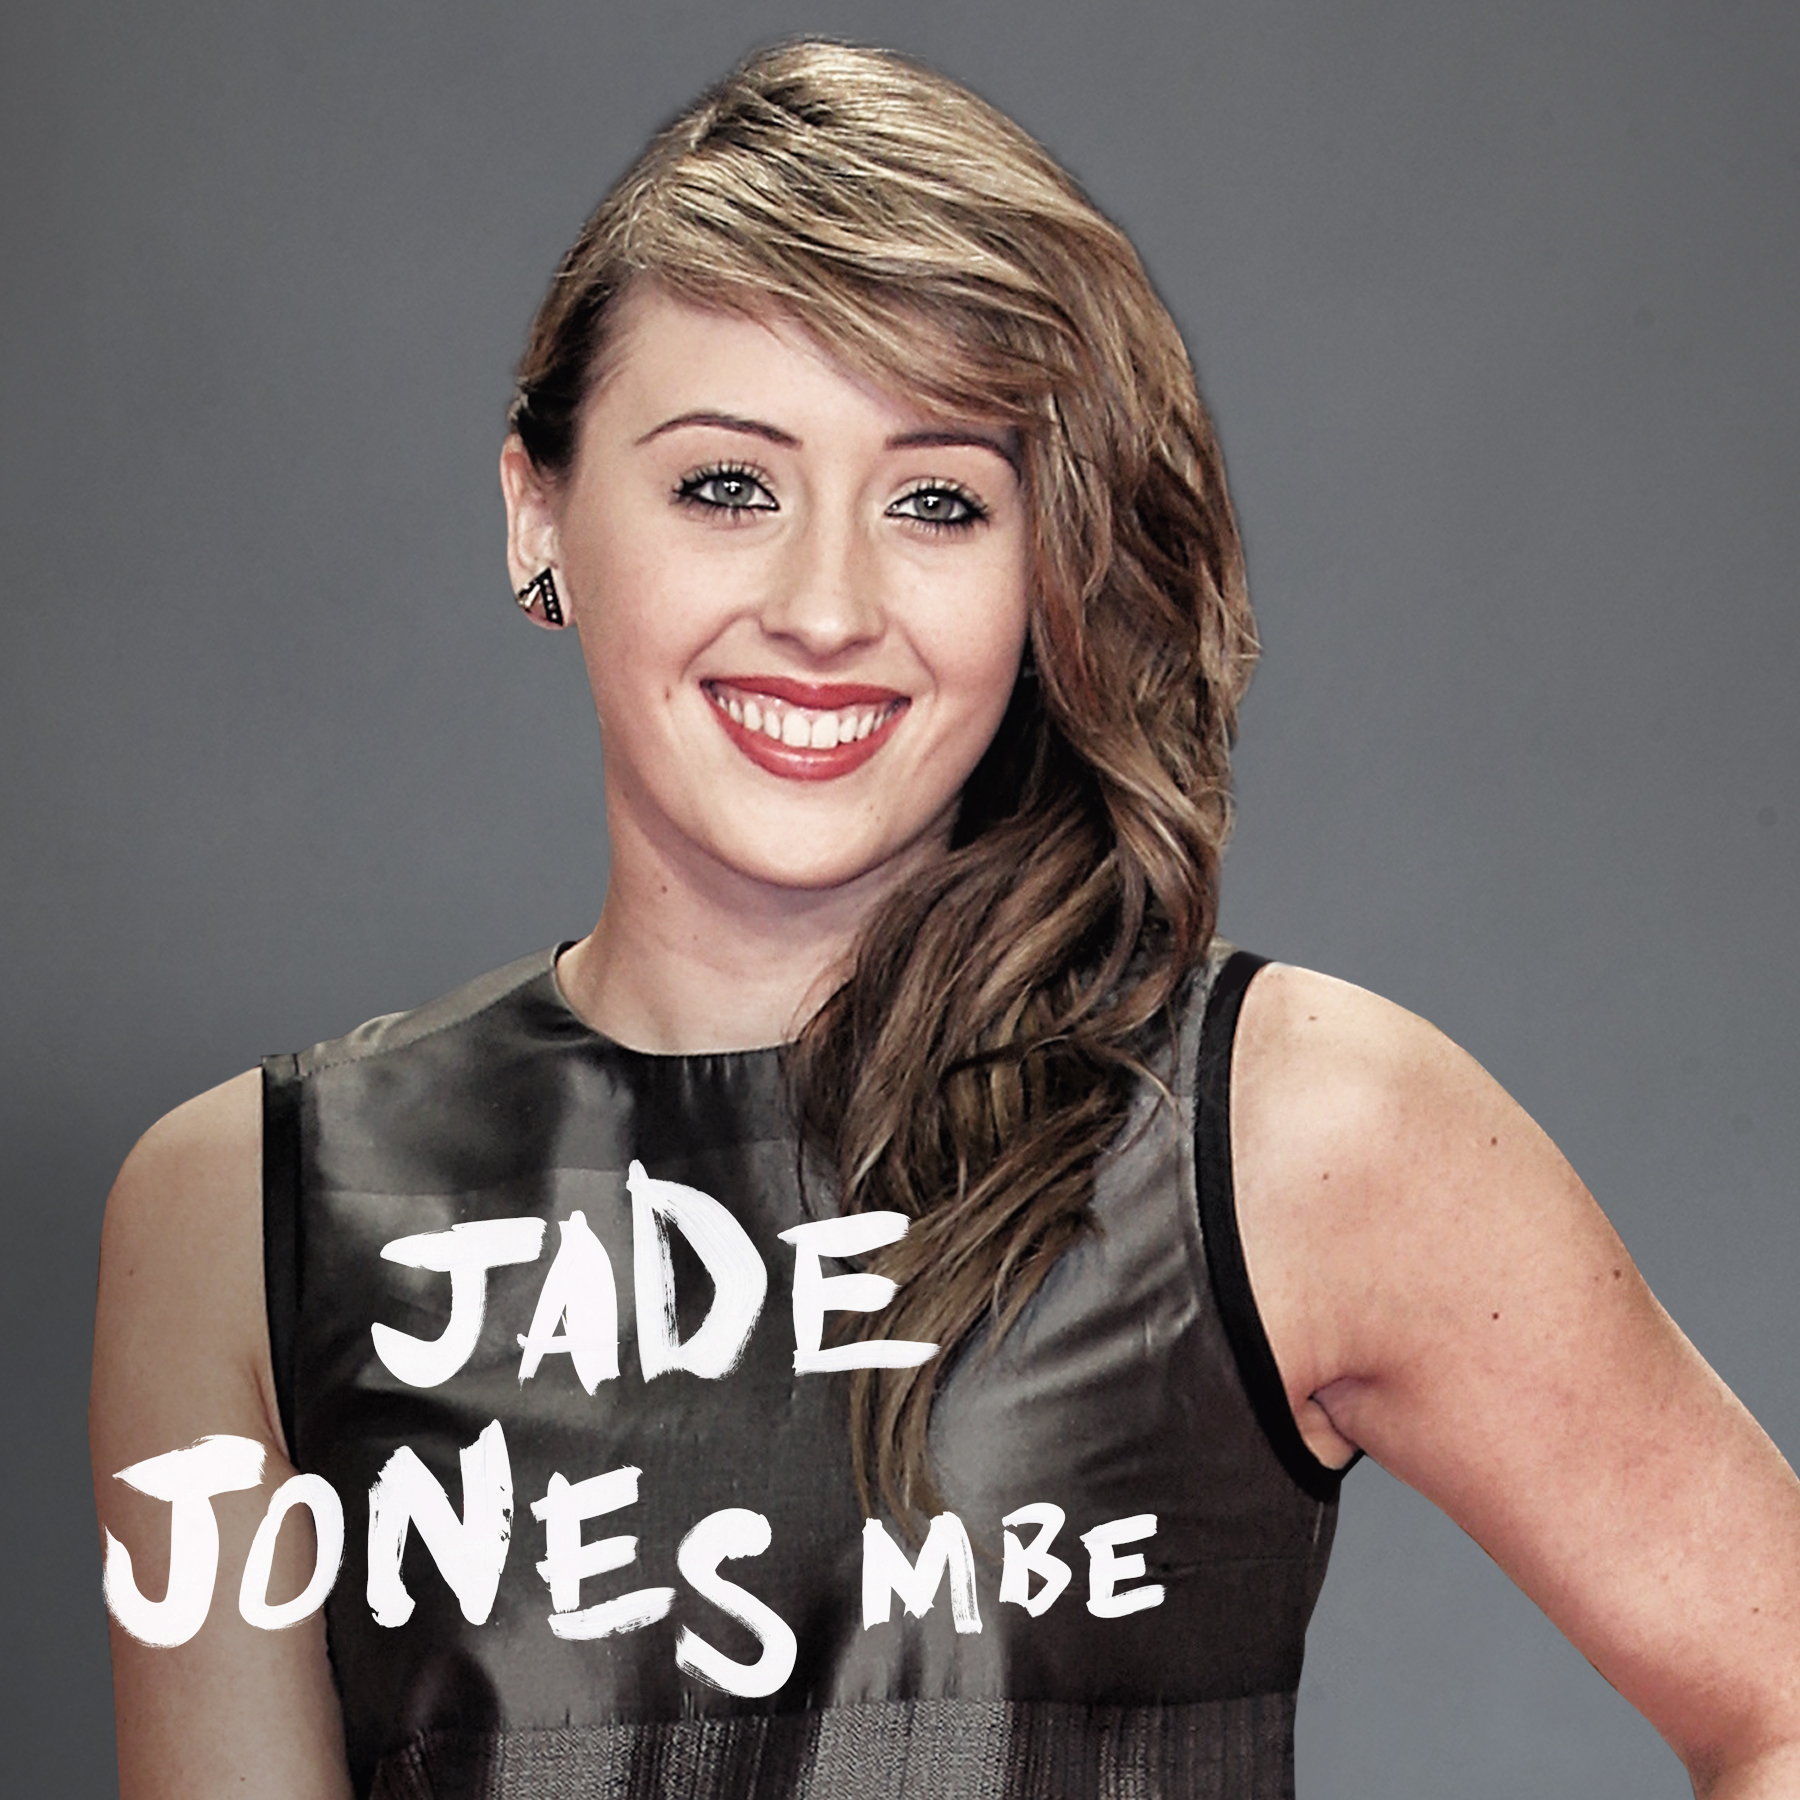 Jade Jones MBE